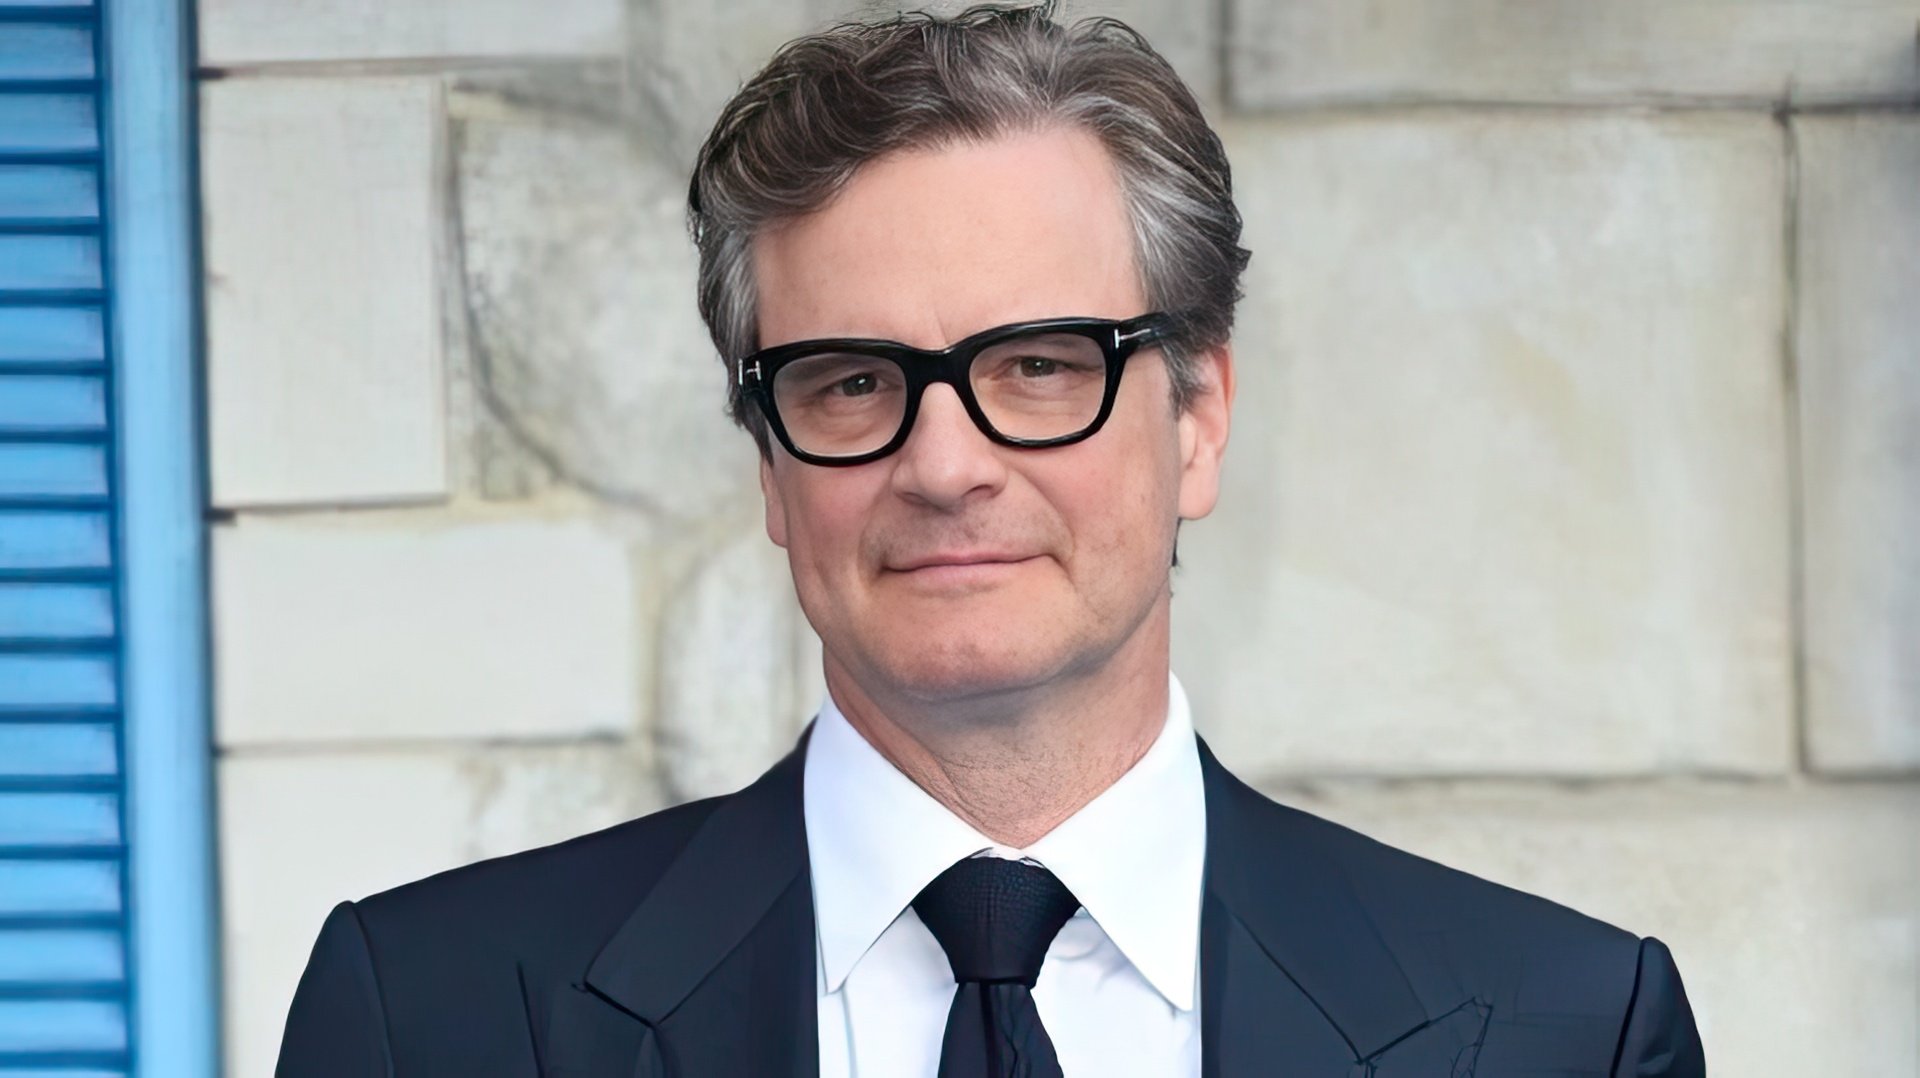 Colin Firth in 2020